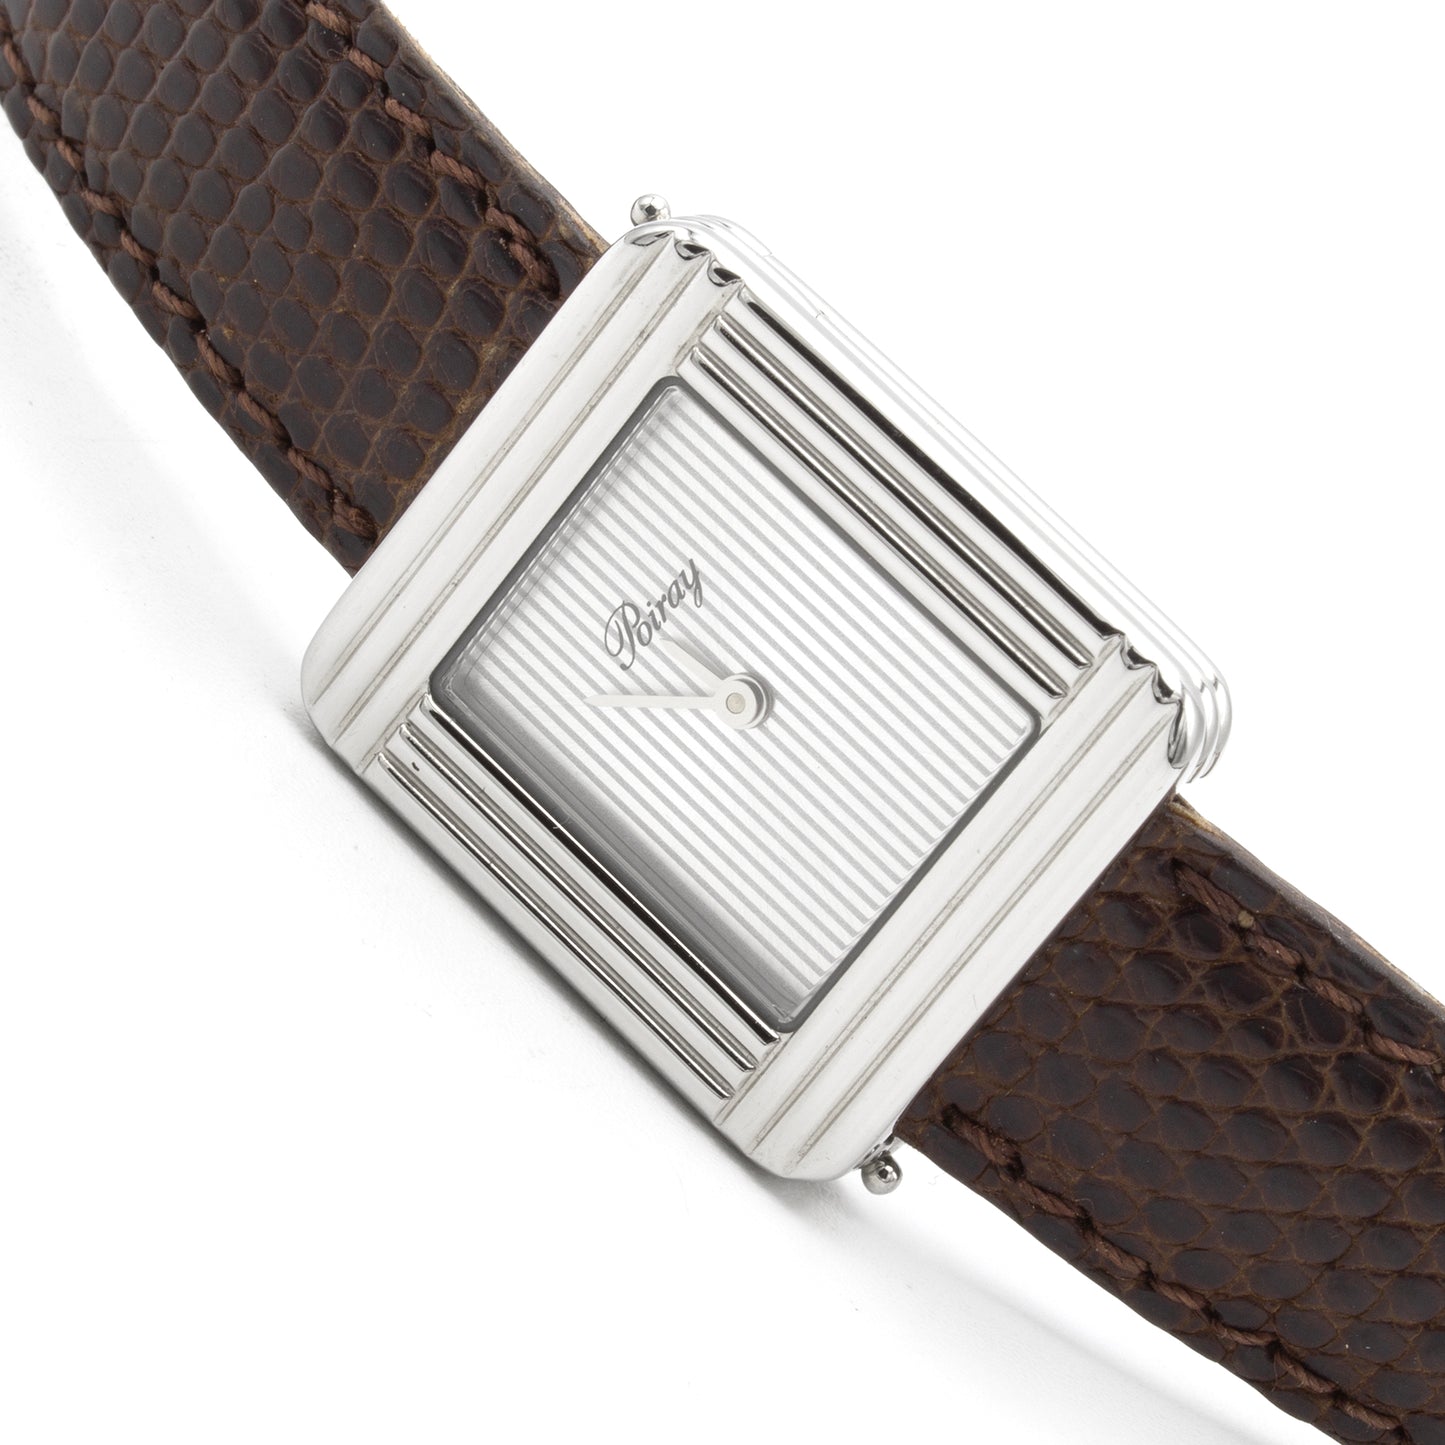 Poiray Ma Première (26x22mm) watch